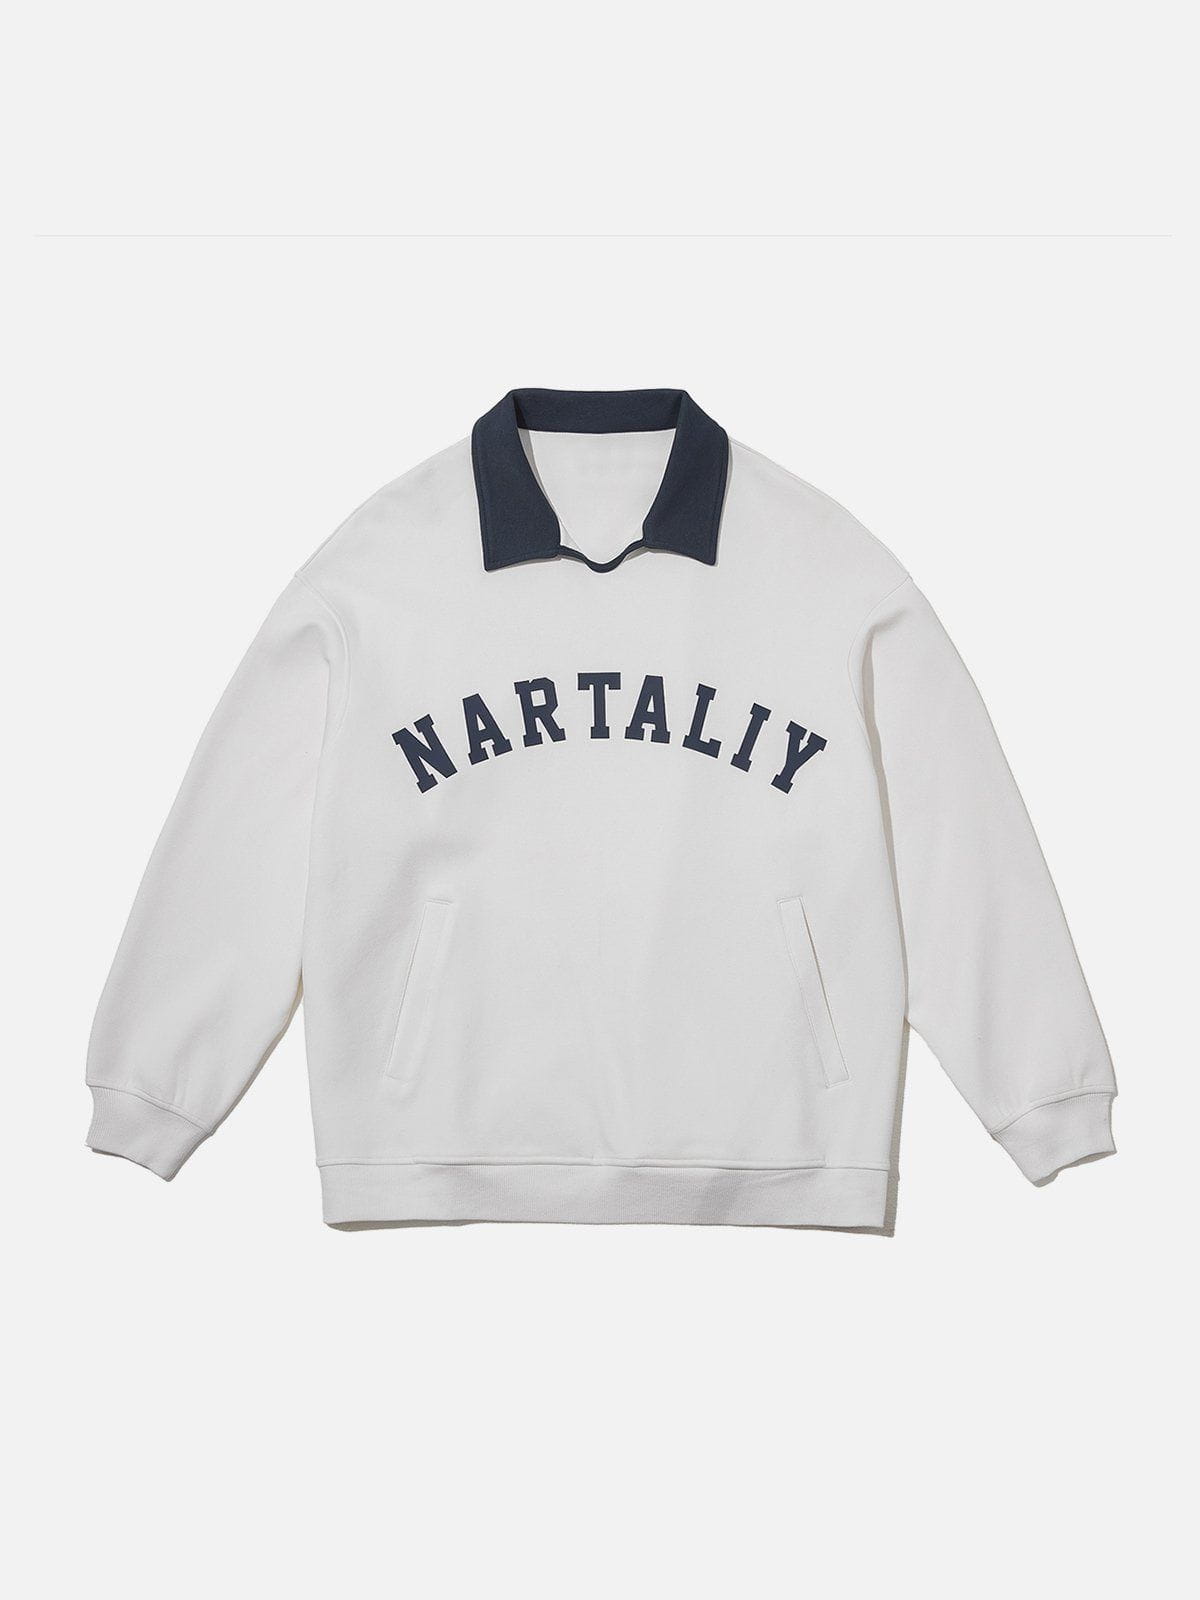 Eprezzy® - Nartaliy Embroidery Polo Sweatshirt Streetwear Fashion - eprezzy.com